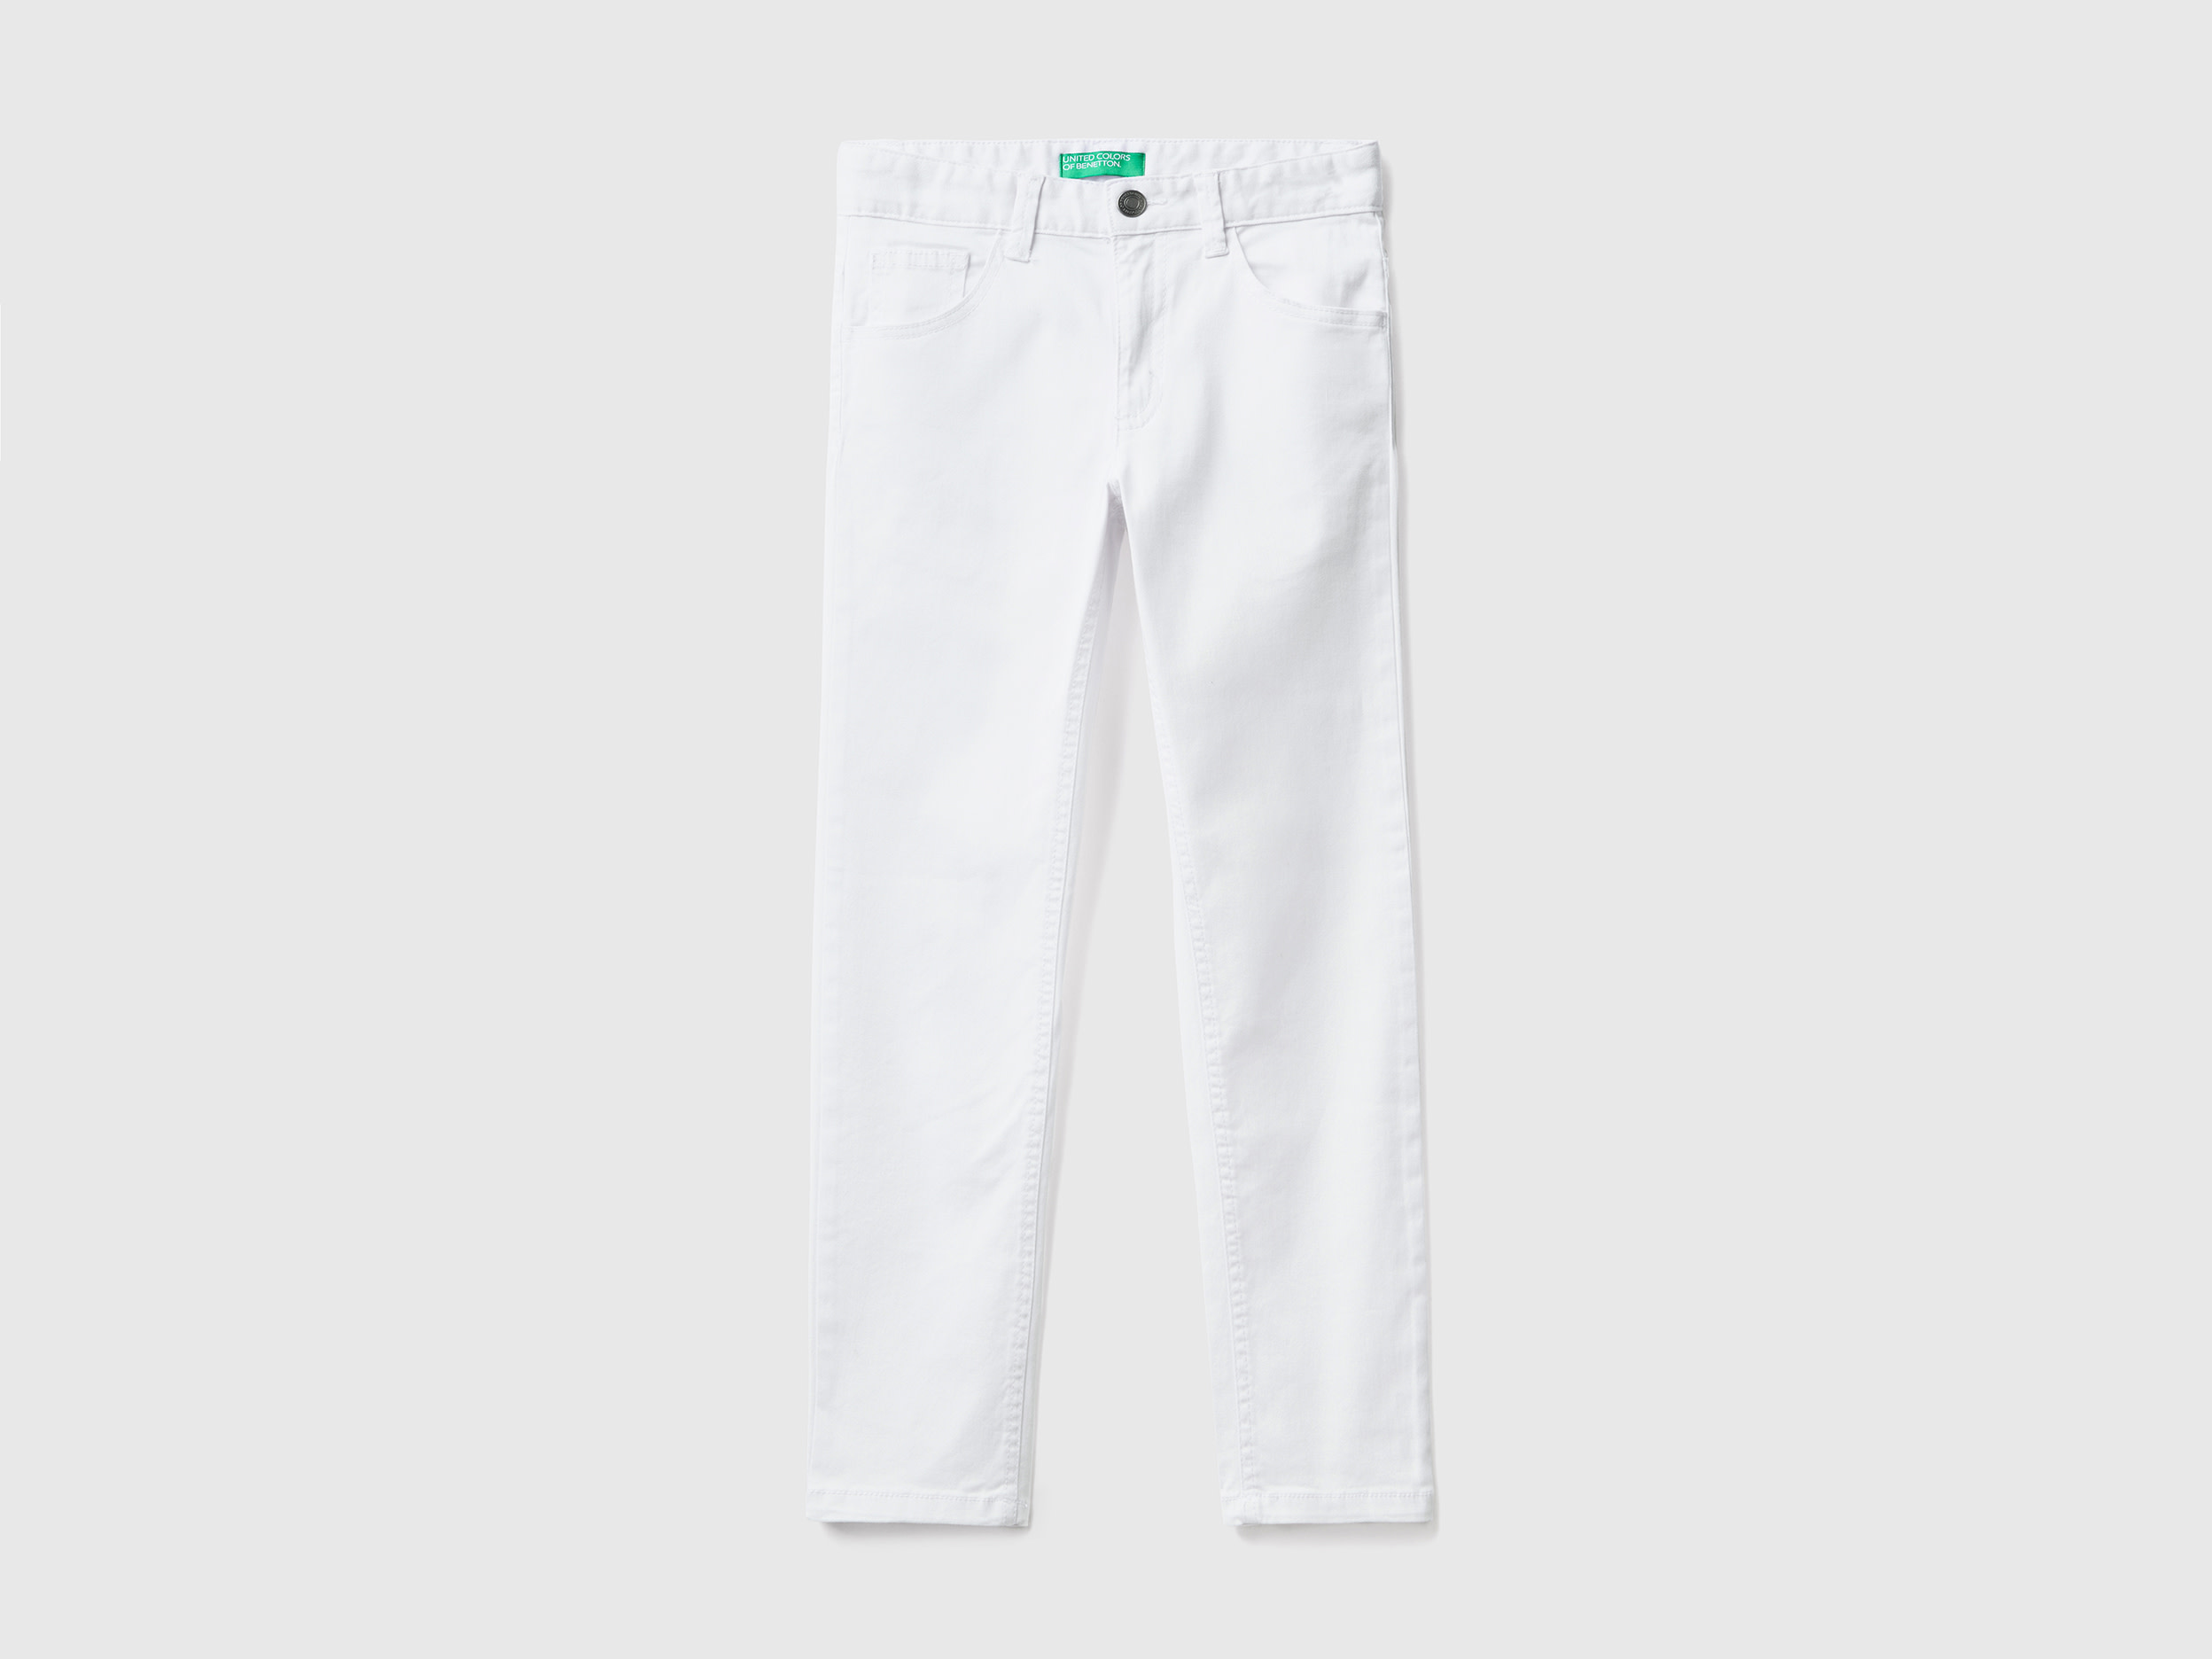 Benetton, Five Pocket Slim Fit Trousers, size 3XL, White, Kids